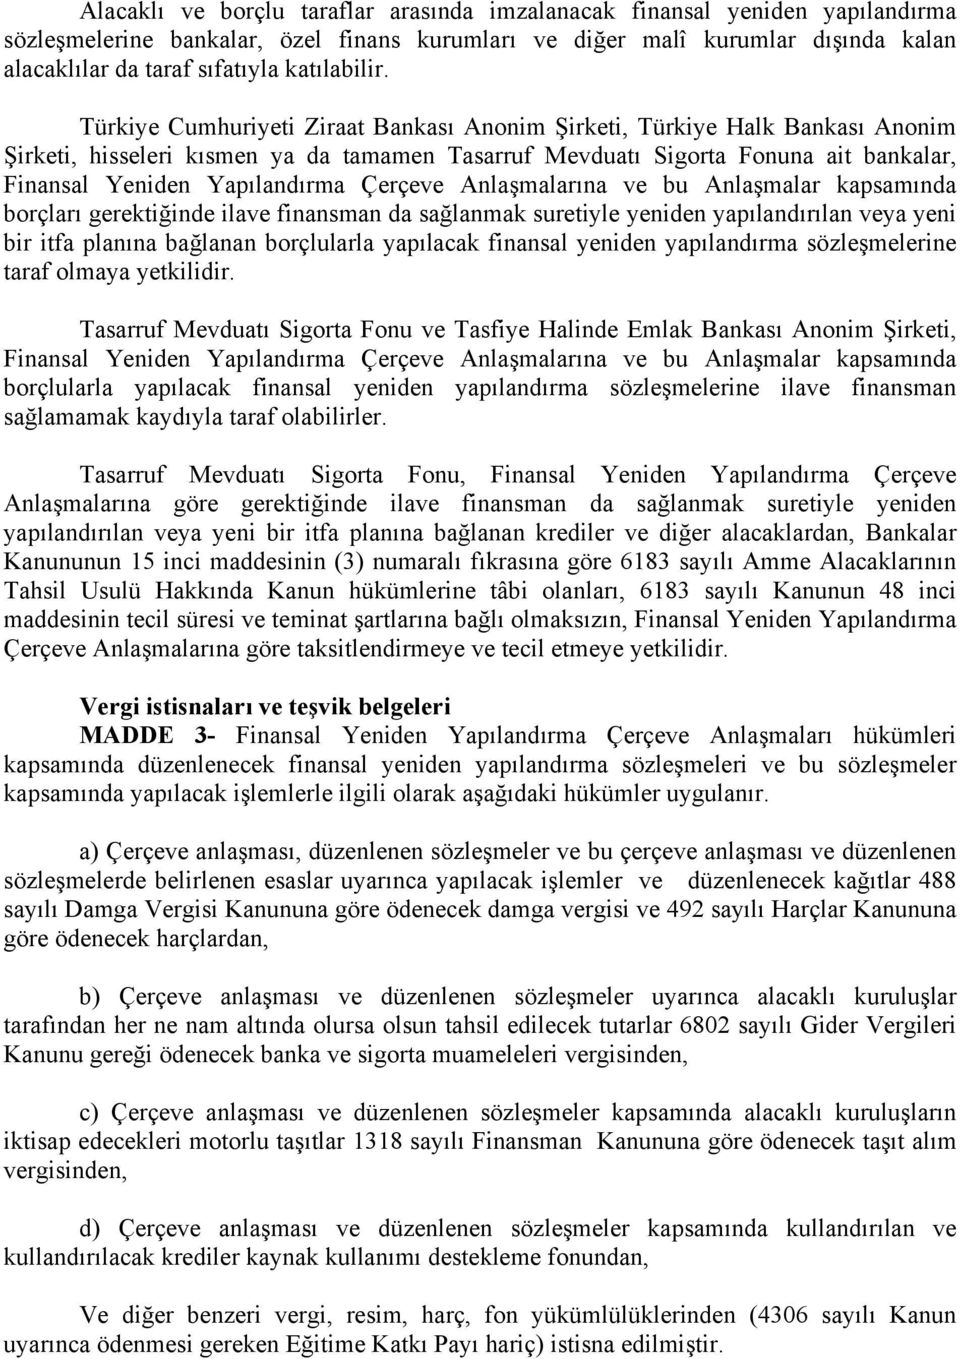 Türkiye Cumhuriyeti Ziraat Bankası Anonim Şirketi, Türkiye Halk Bankası Anonim Şirketi, hisseleri kısmen ya da tamamen Tasarruf Mevduatı Sigorta Fonuna ait bankalar, Finansal Yeniden Yapılandırma